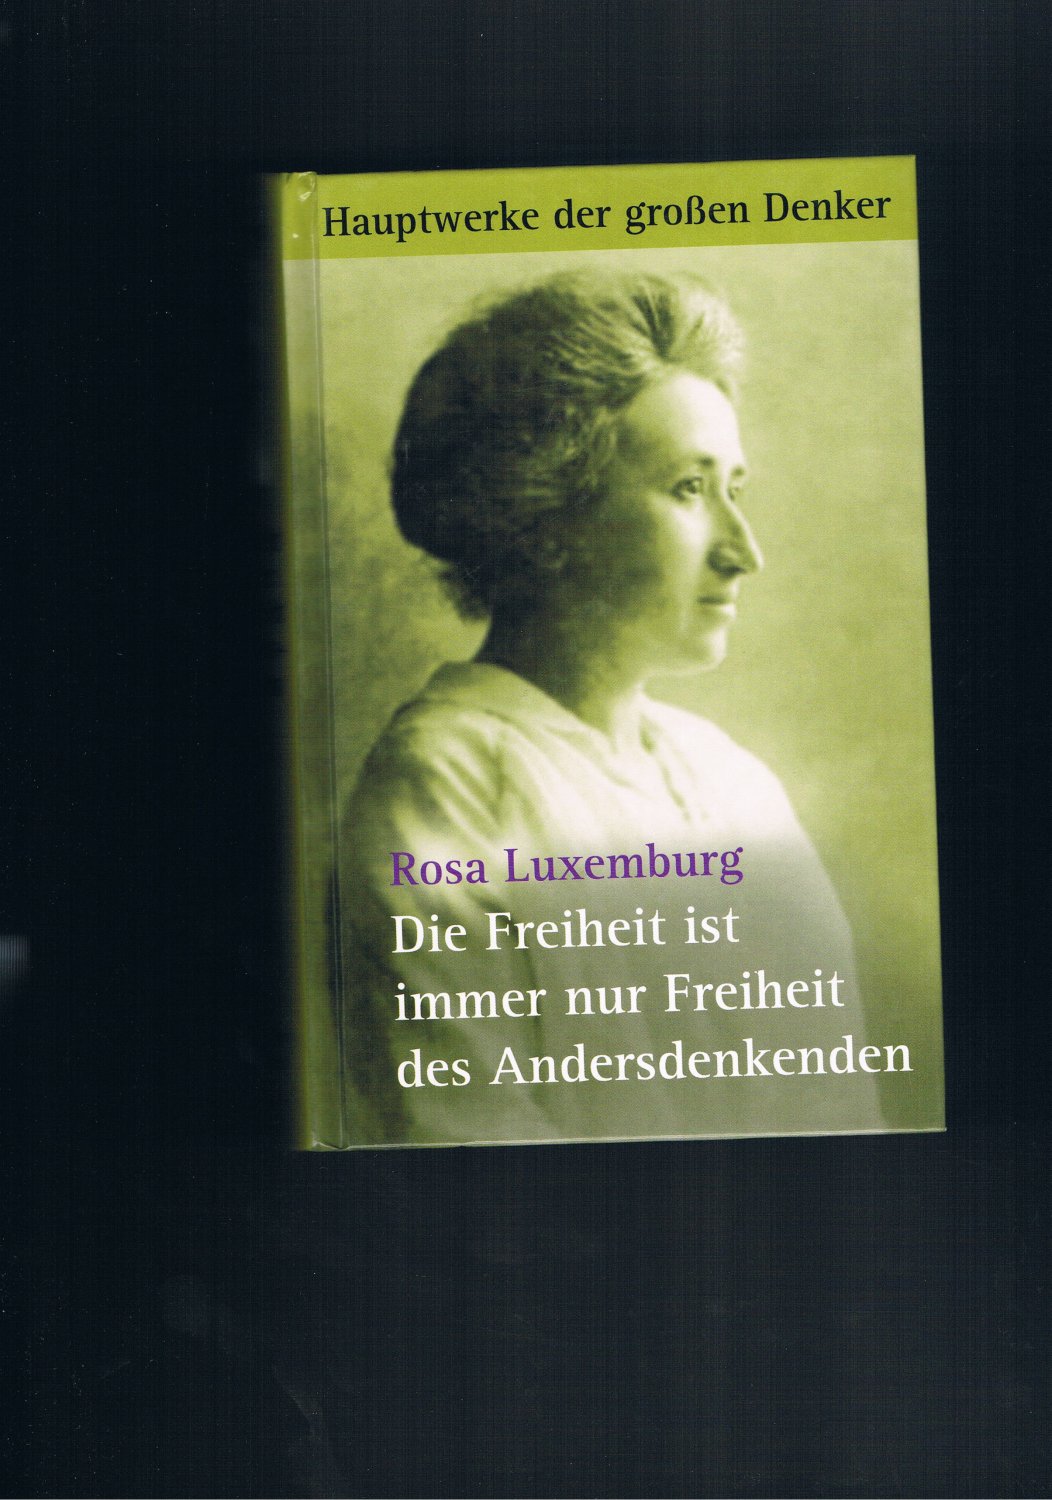 Die Freiheit ist immer nur die Freiheit der andersdenkenden - Rosa Luxemburg